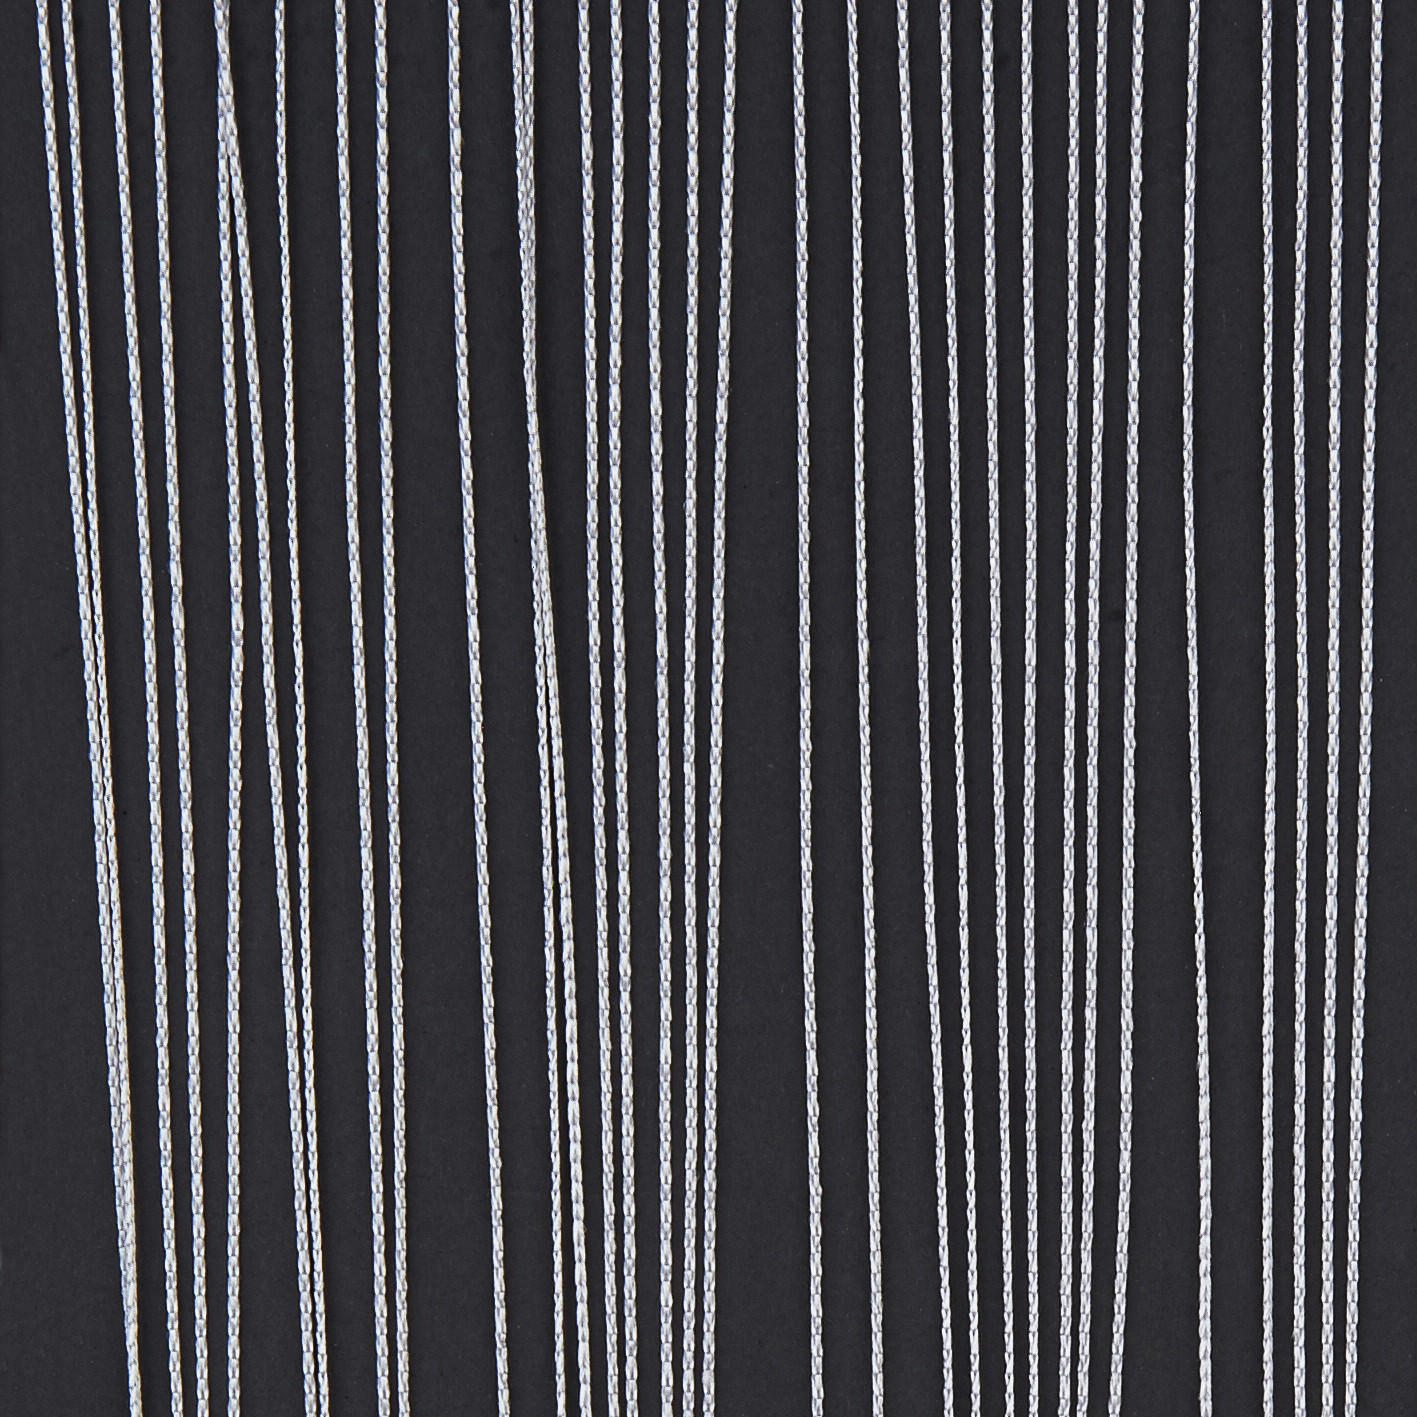 Fadenvorhang String weiß B/L: ca. 90x245 cm String - weiß (90,00/245,00cm) - POCOline